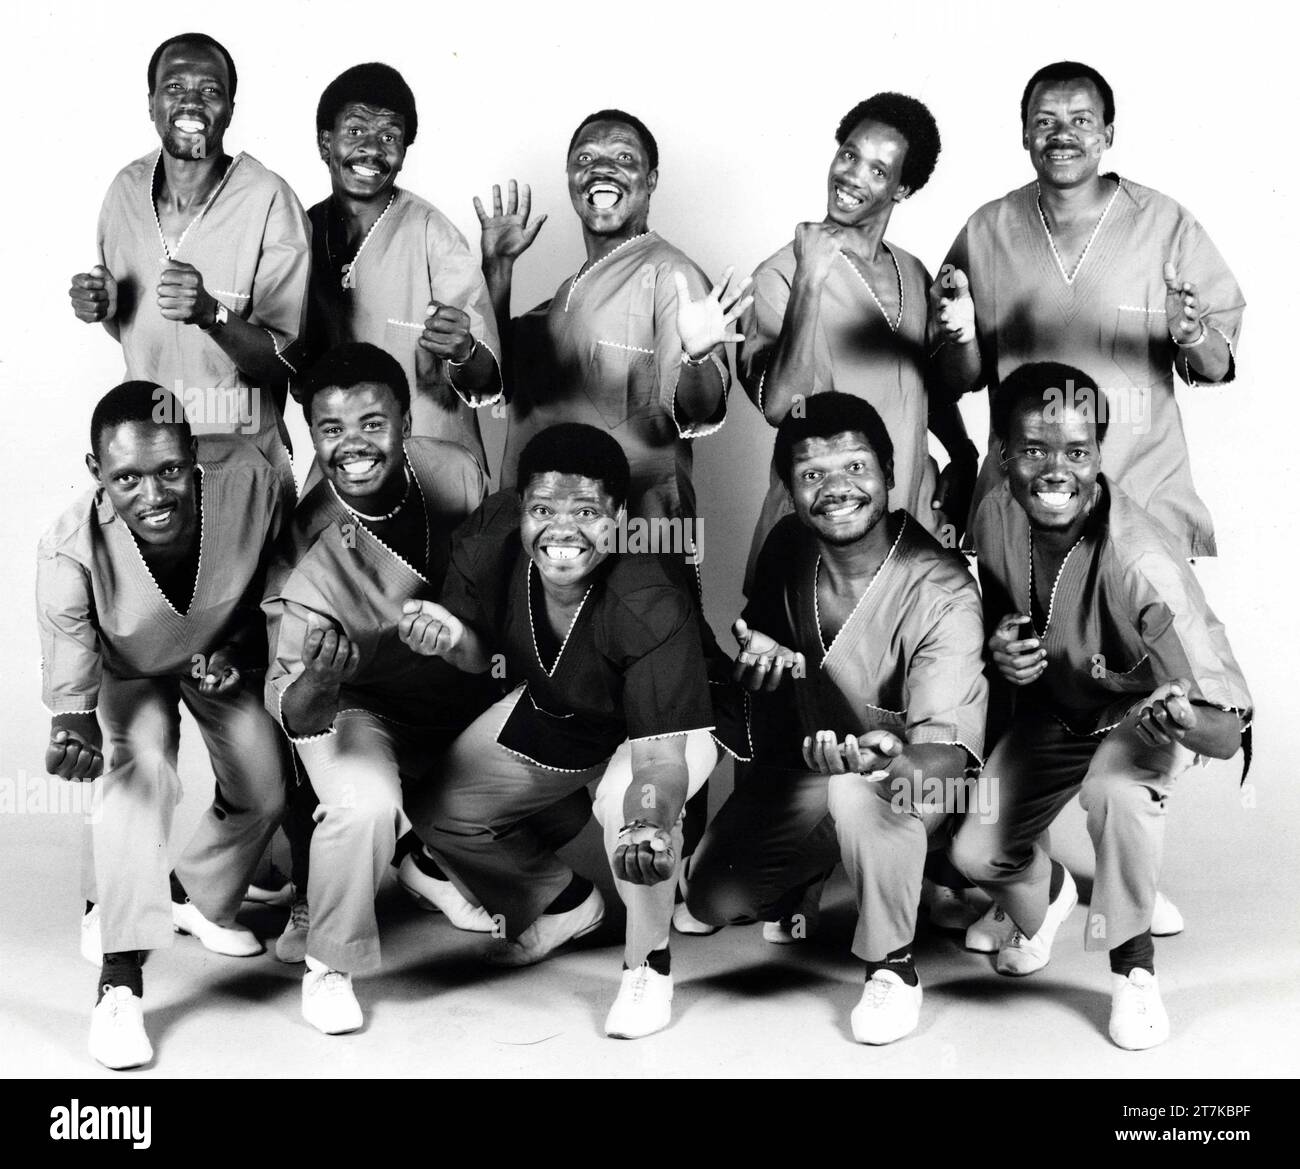 Das Publicity-Studio Ladysmith Black Mambazo wurde 1987 von Don Minnaar in Gauteng Johannesburg aufgenommen. Aus der Sammlung - südafrikanische Musiker 1980er - Don Minnaar fotografisches Archiv Stockfoto